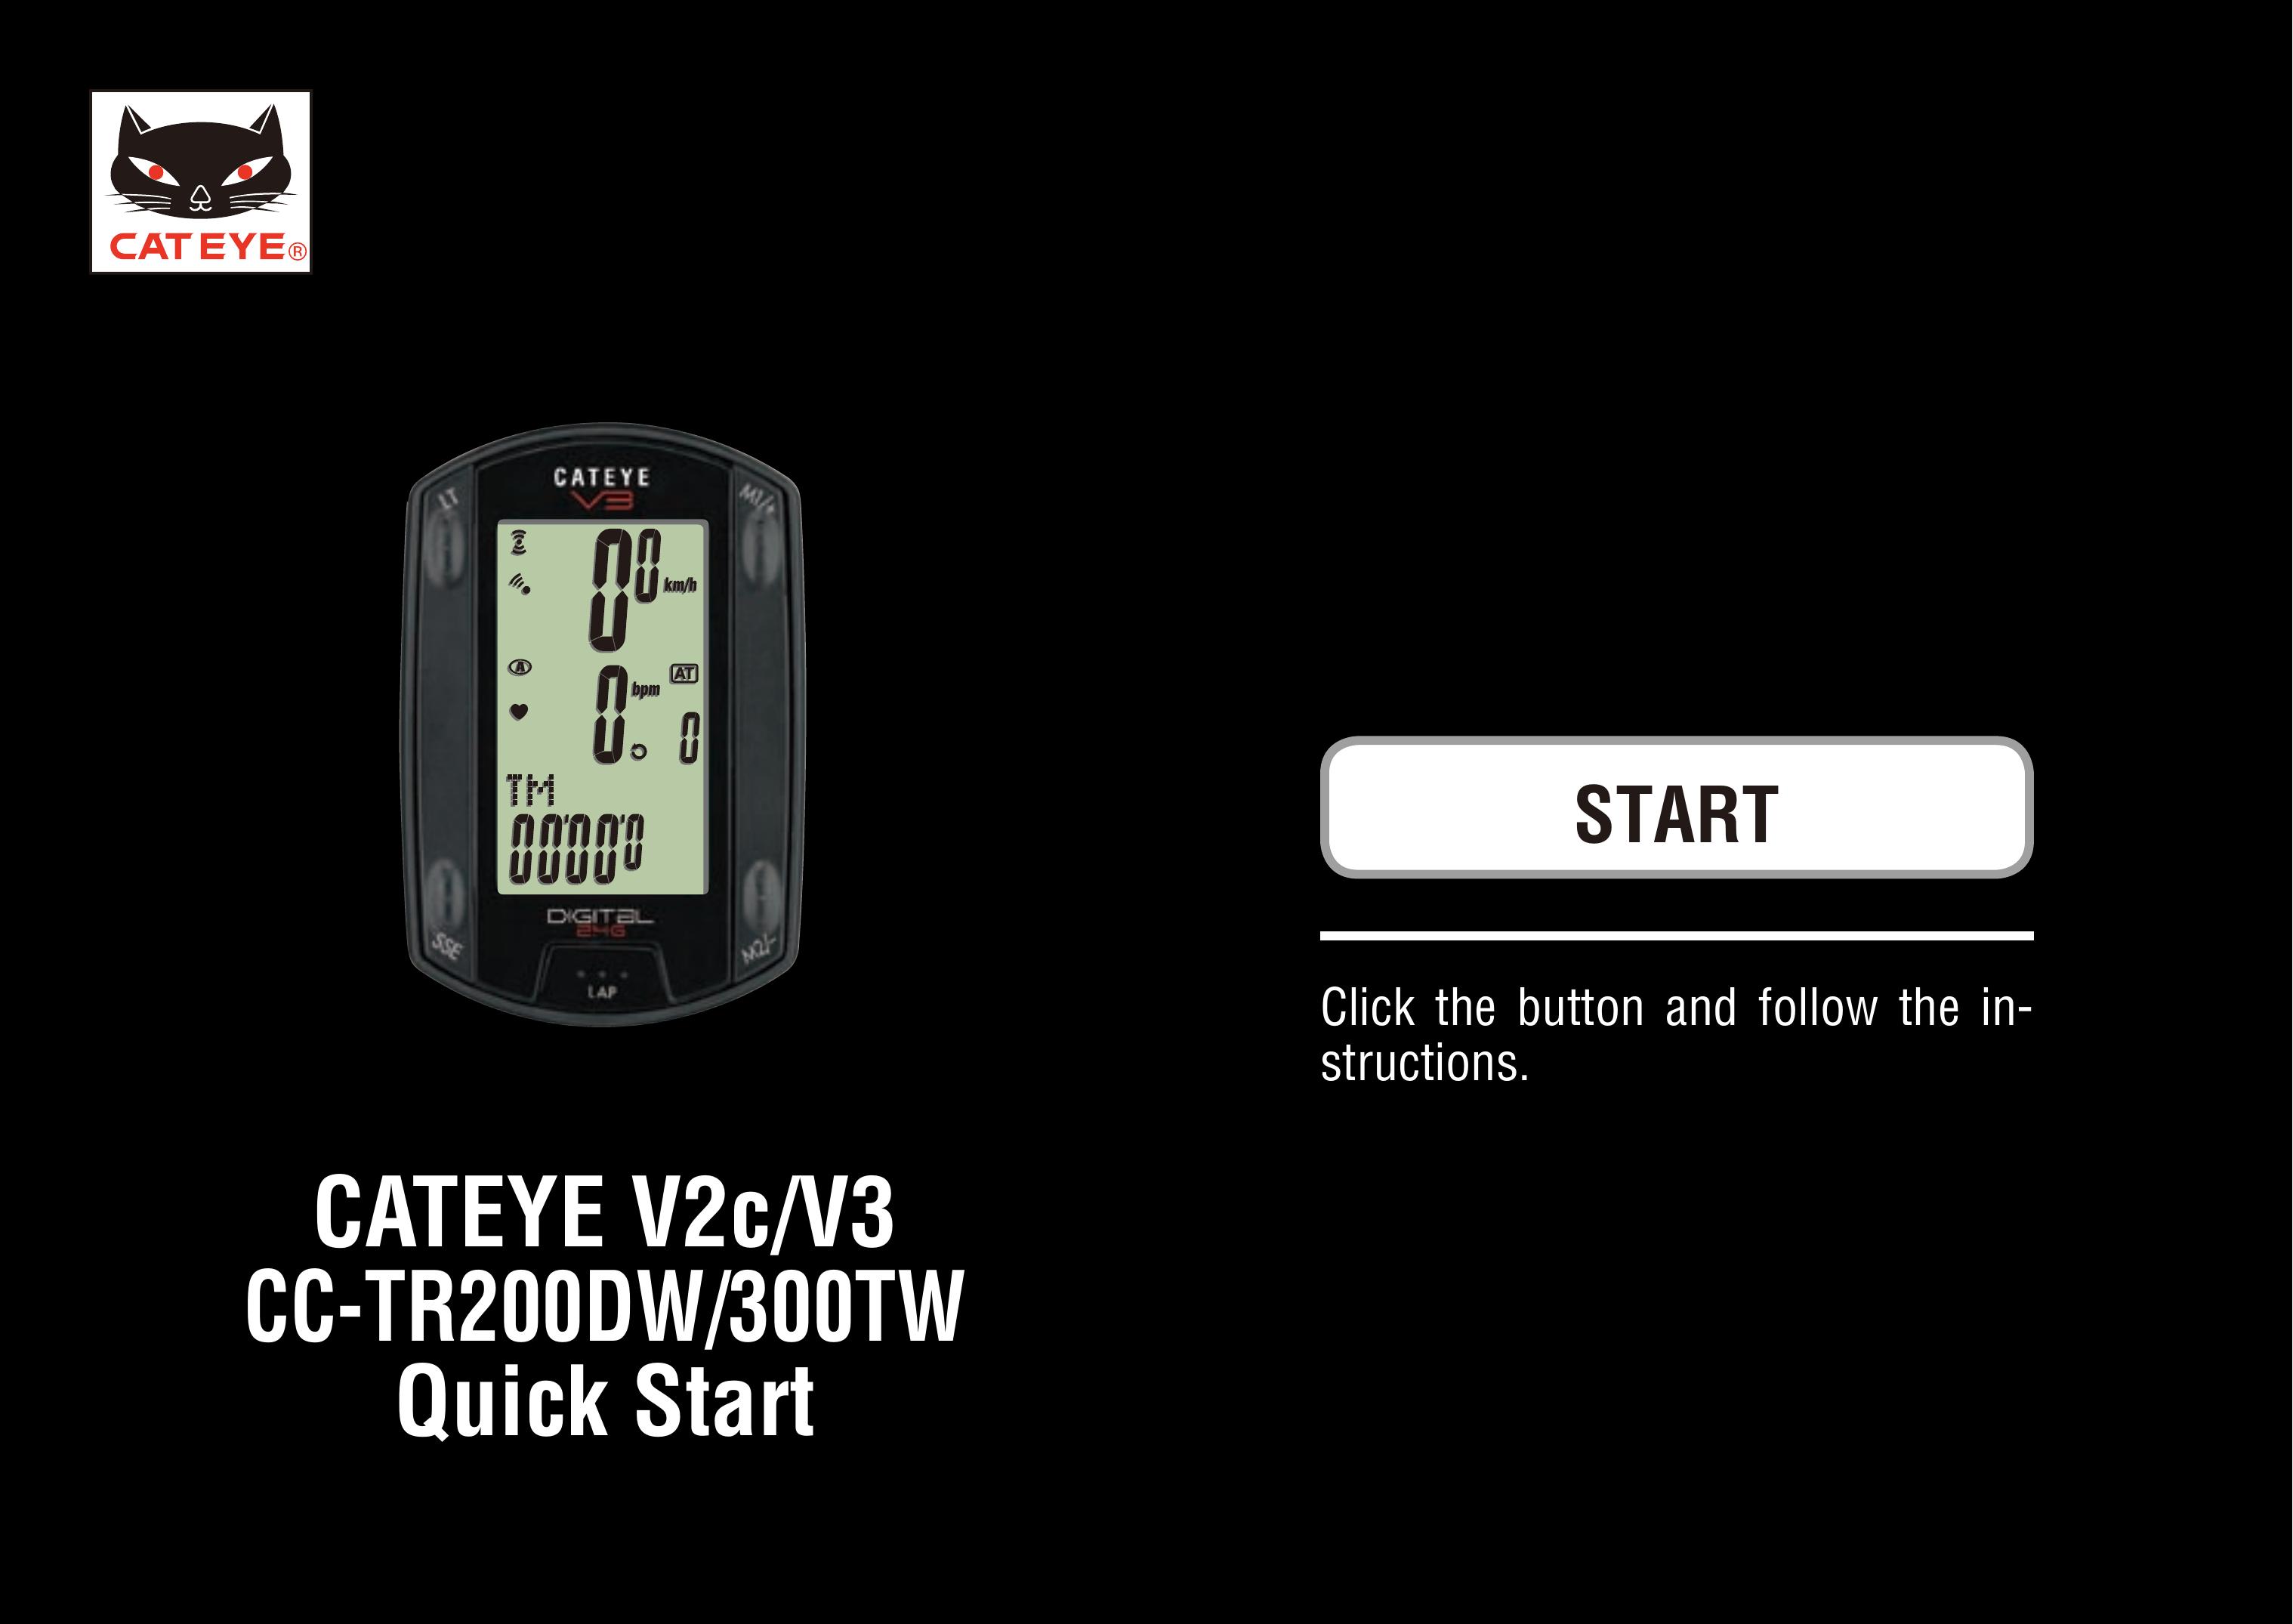 Cateye CC-TR200DW Refrigerator User Manual